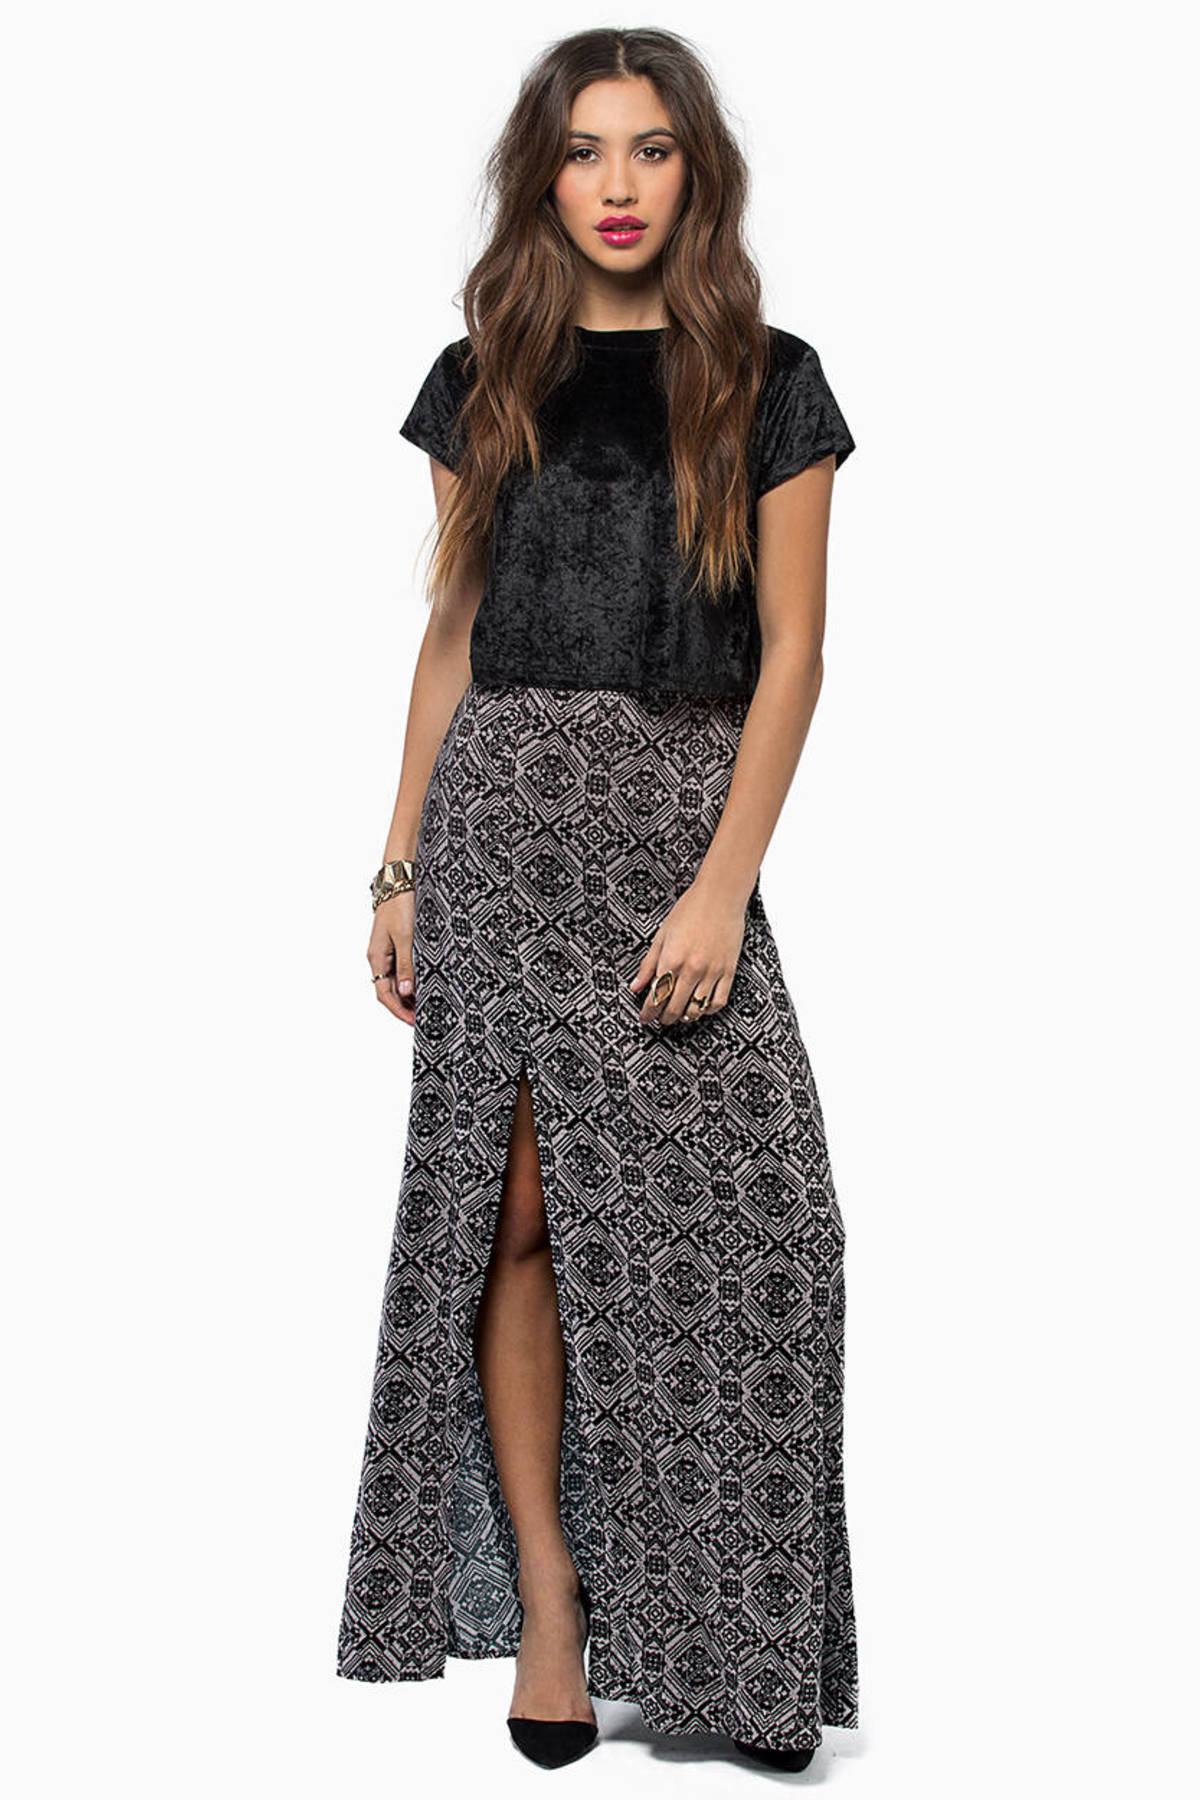 Weekend Breeze Skirt in Black - $19 | Tobi US